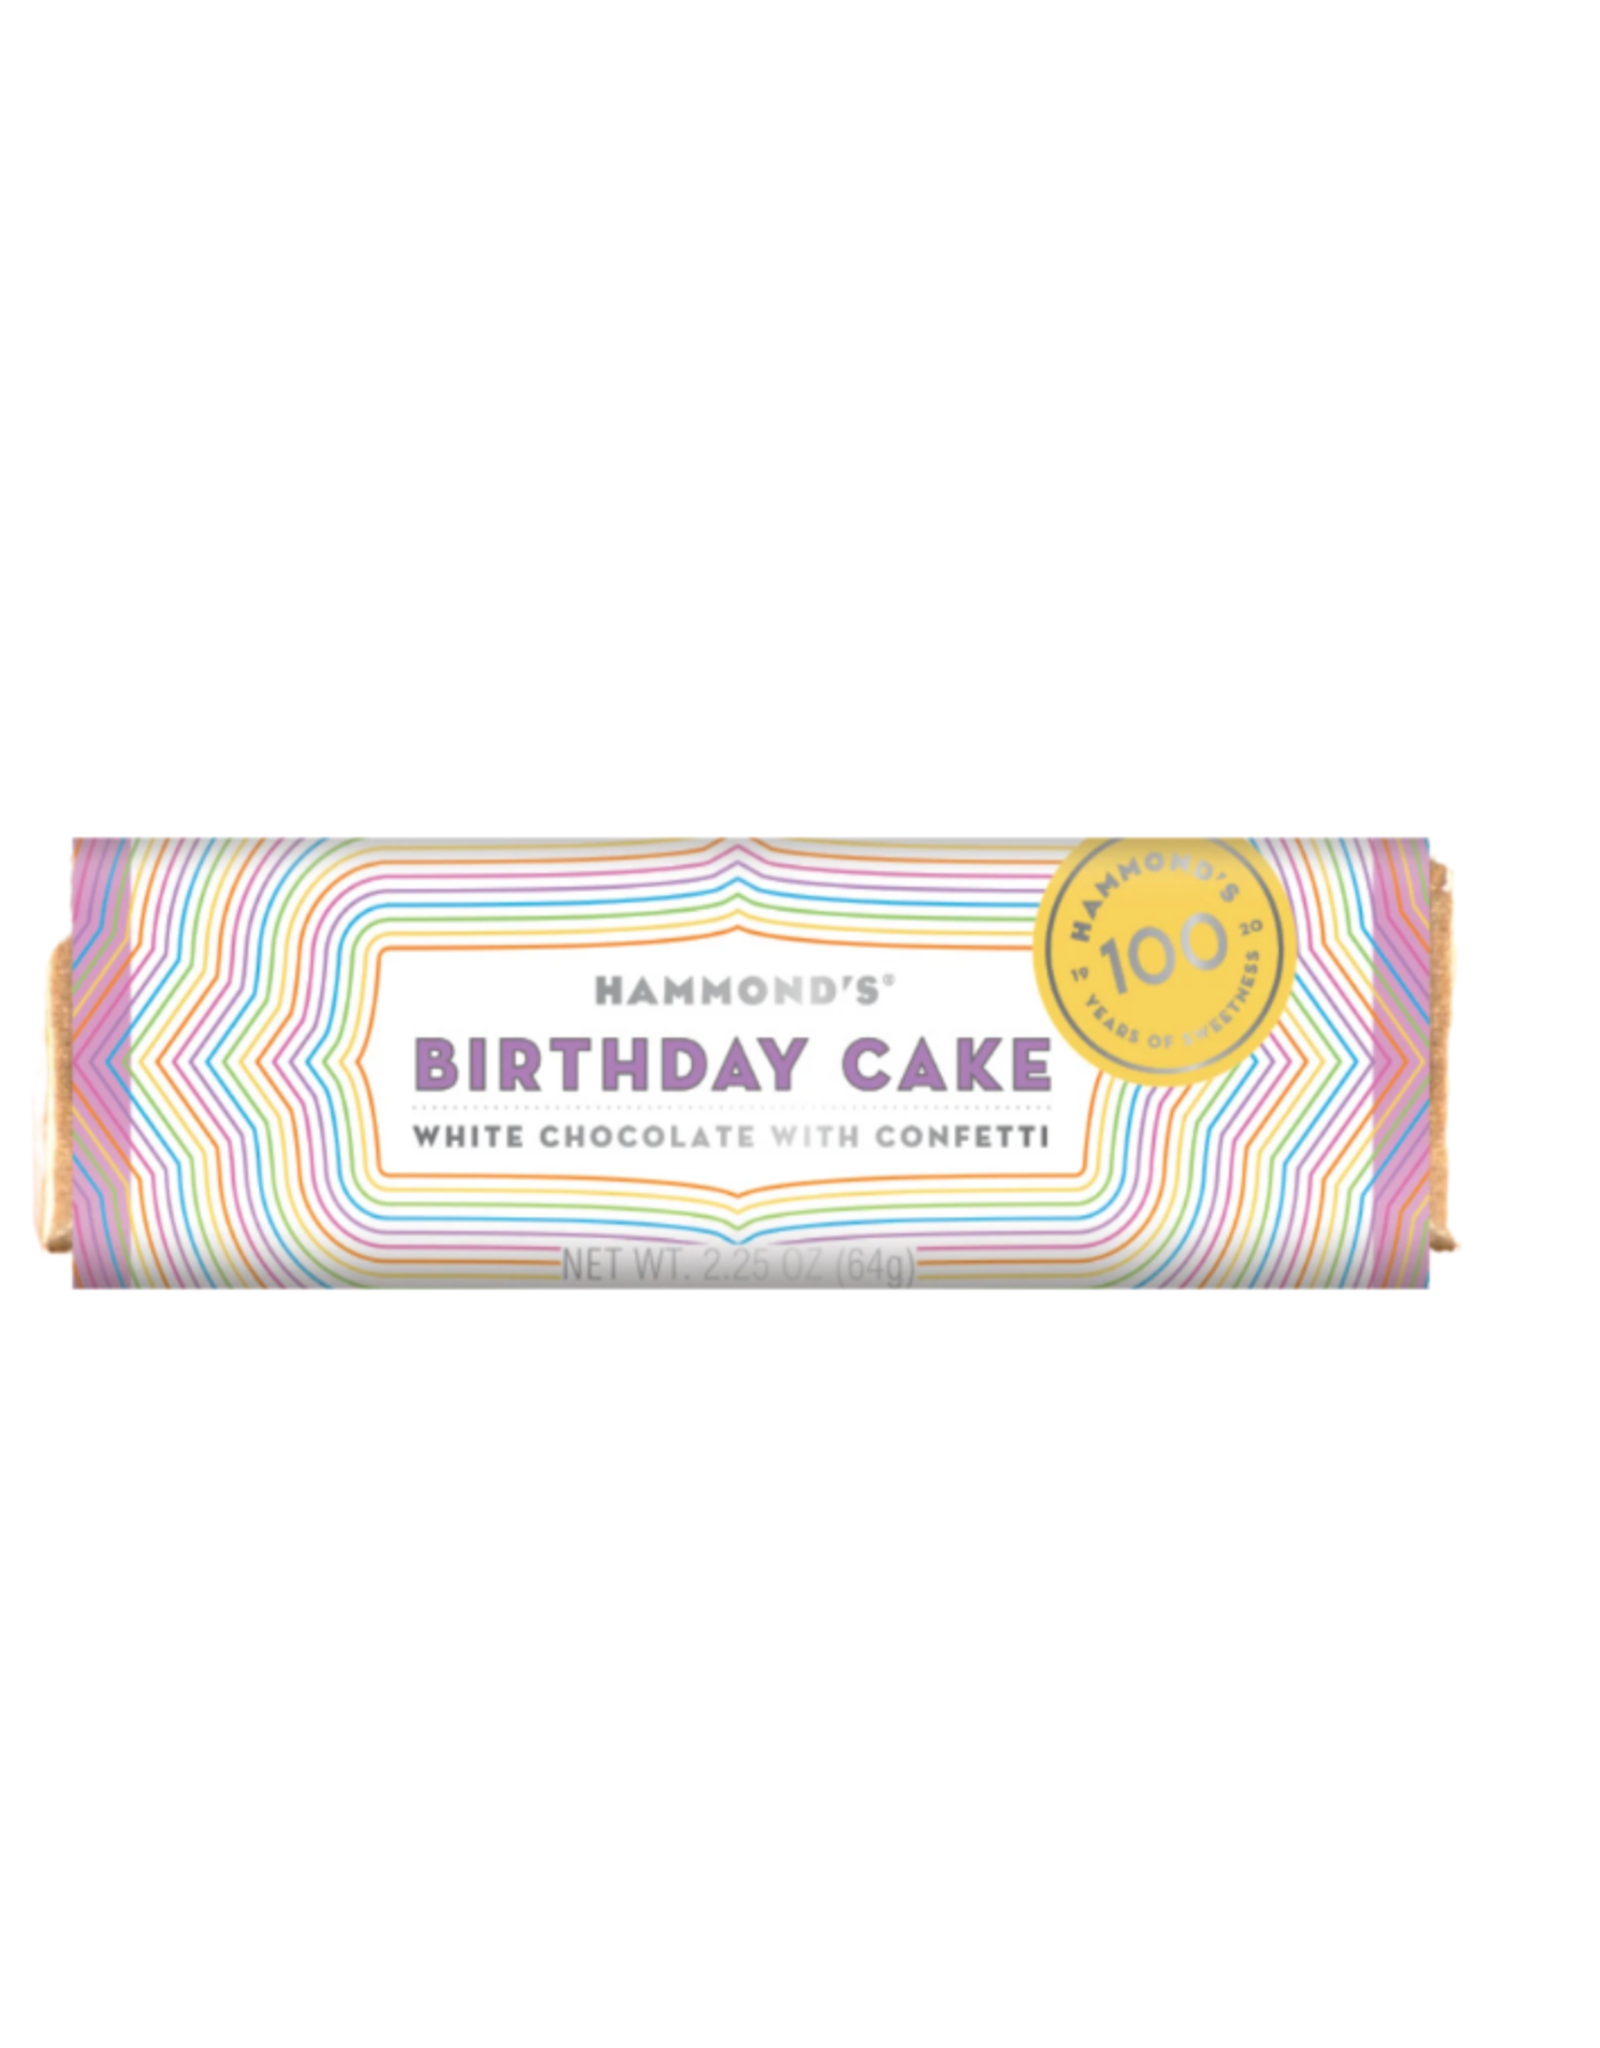 Hammond's Birthday Cake Choc Bar